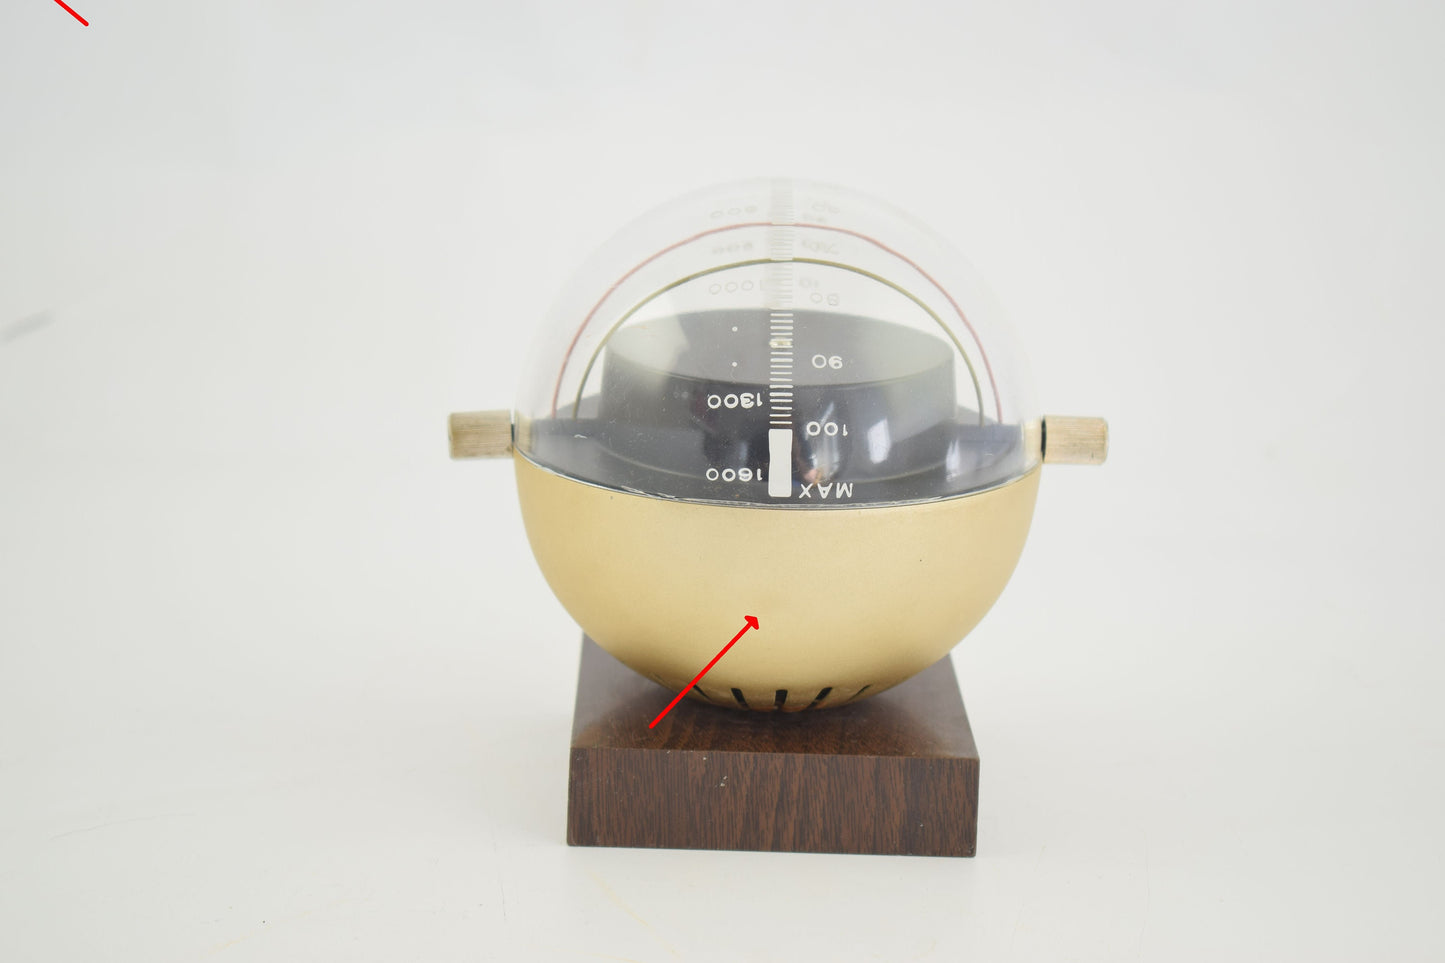 Estado sólido – Times Sputnik radio de diseño de la era espacial Panasonic, Matsushita, National